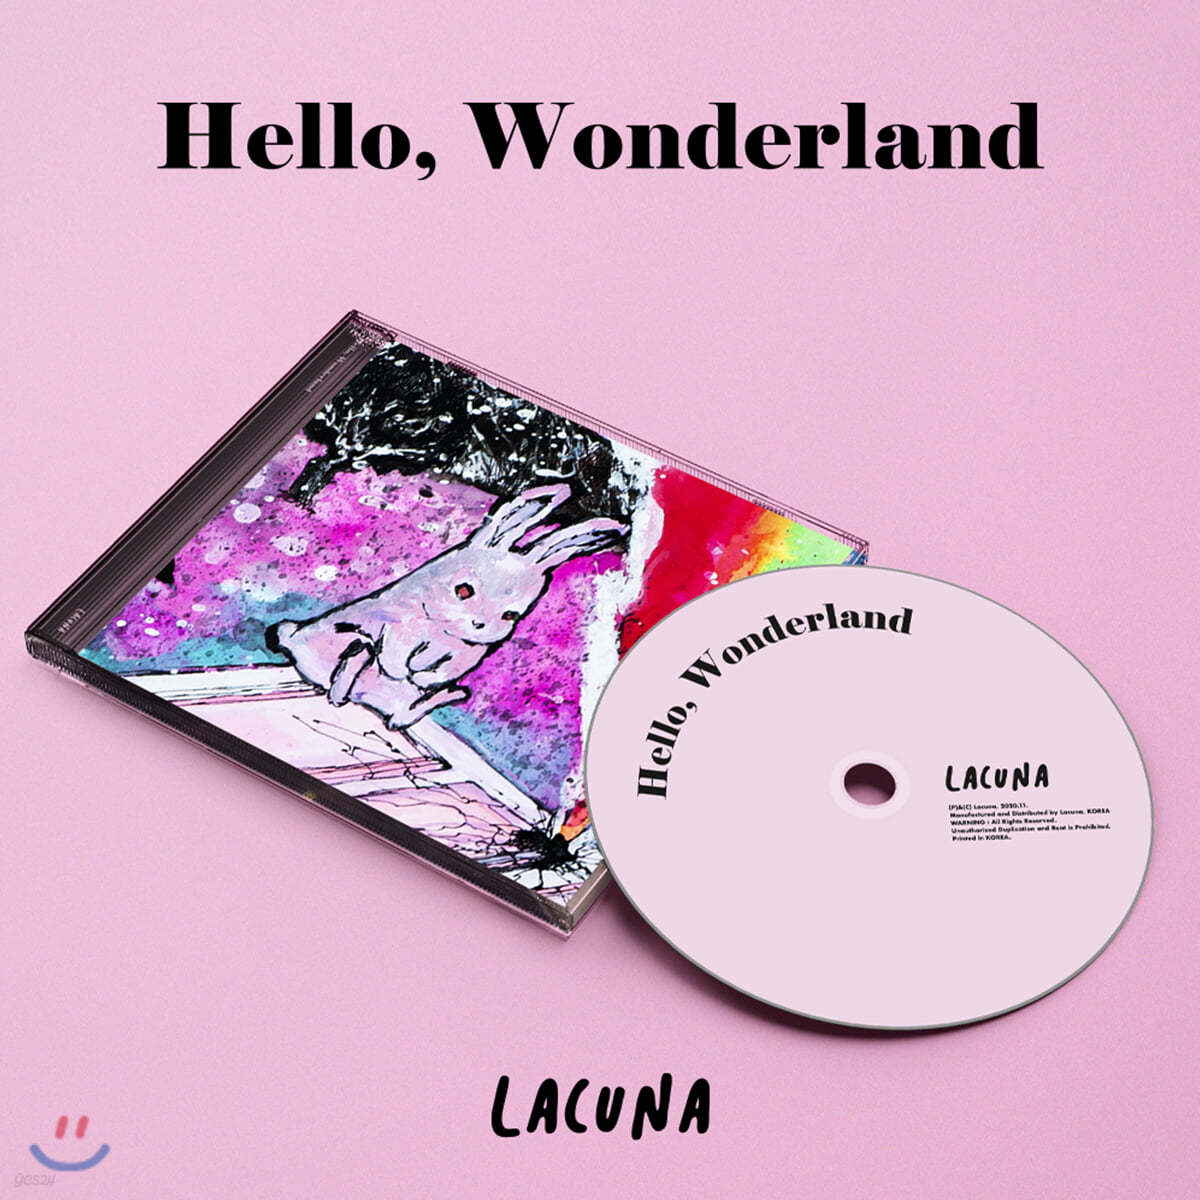 라쿠나 (Lacuna) - Hello, Wonderland (Happy Robot Edition)